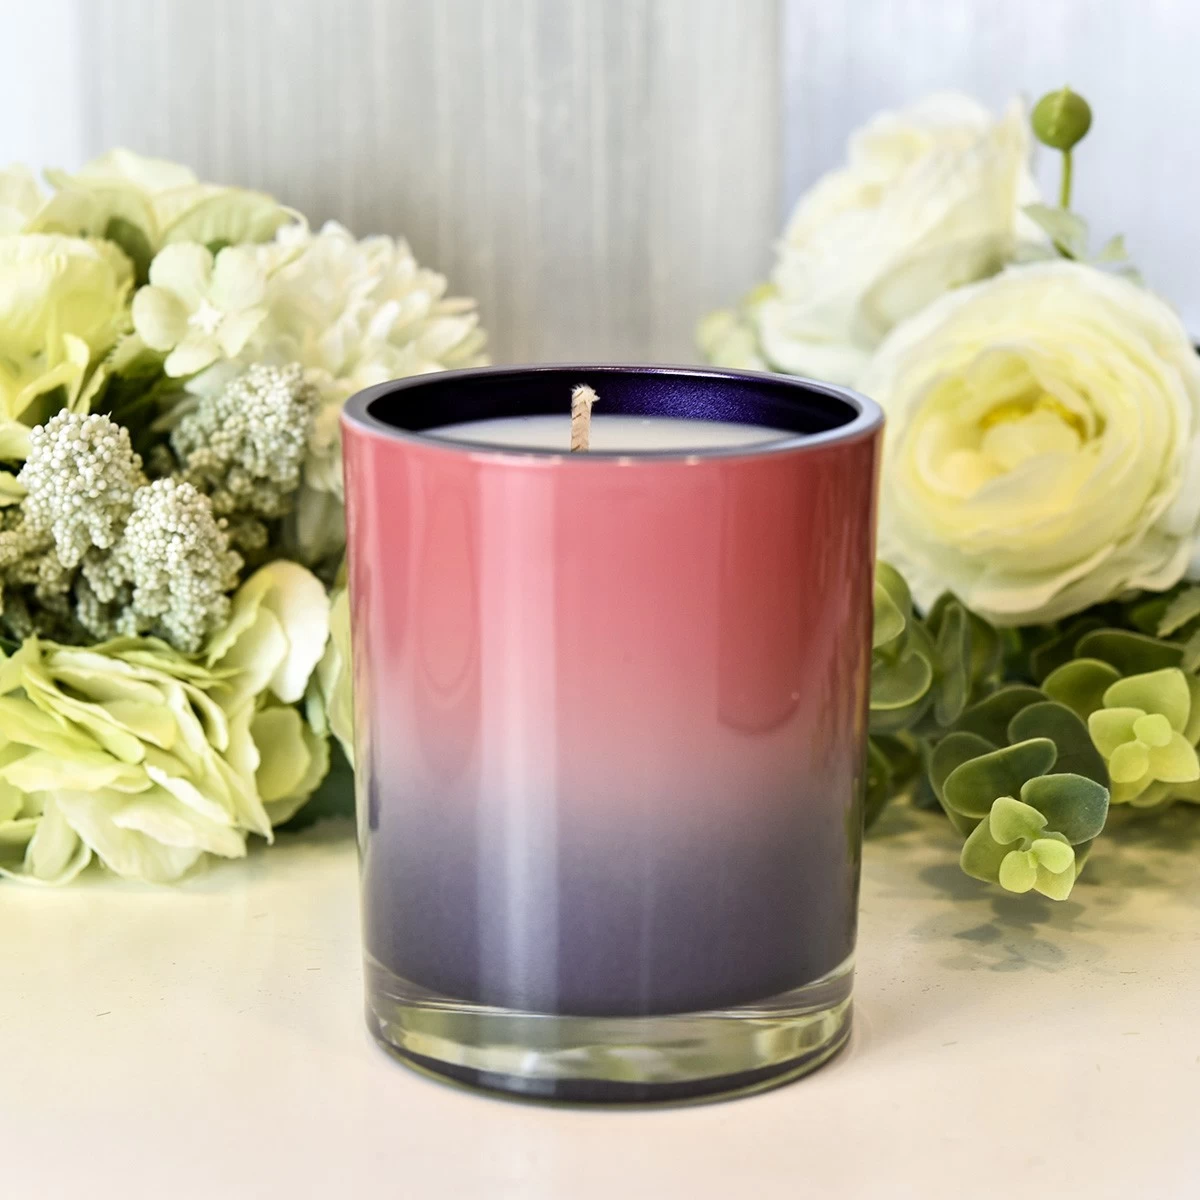 جرة شمعة زجاجية أرجوانية متدرجة فاخرة باللون الوردي داخل ديكور المنزل بلون الرش